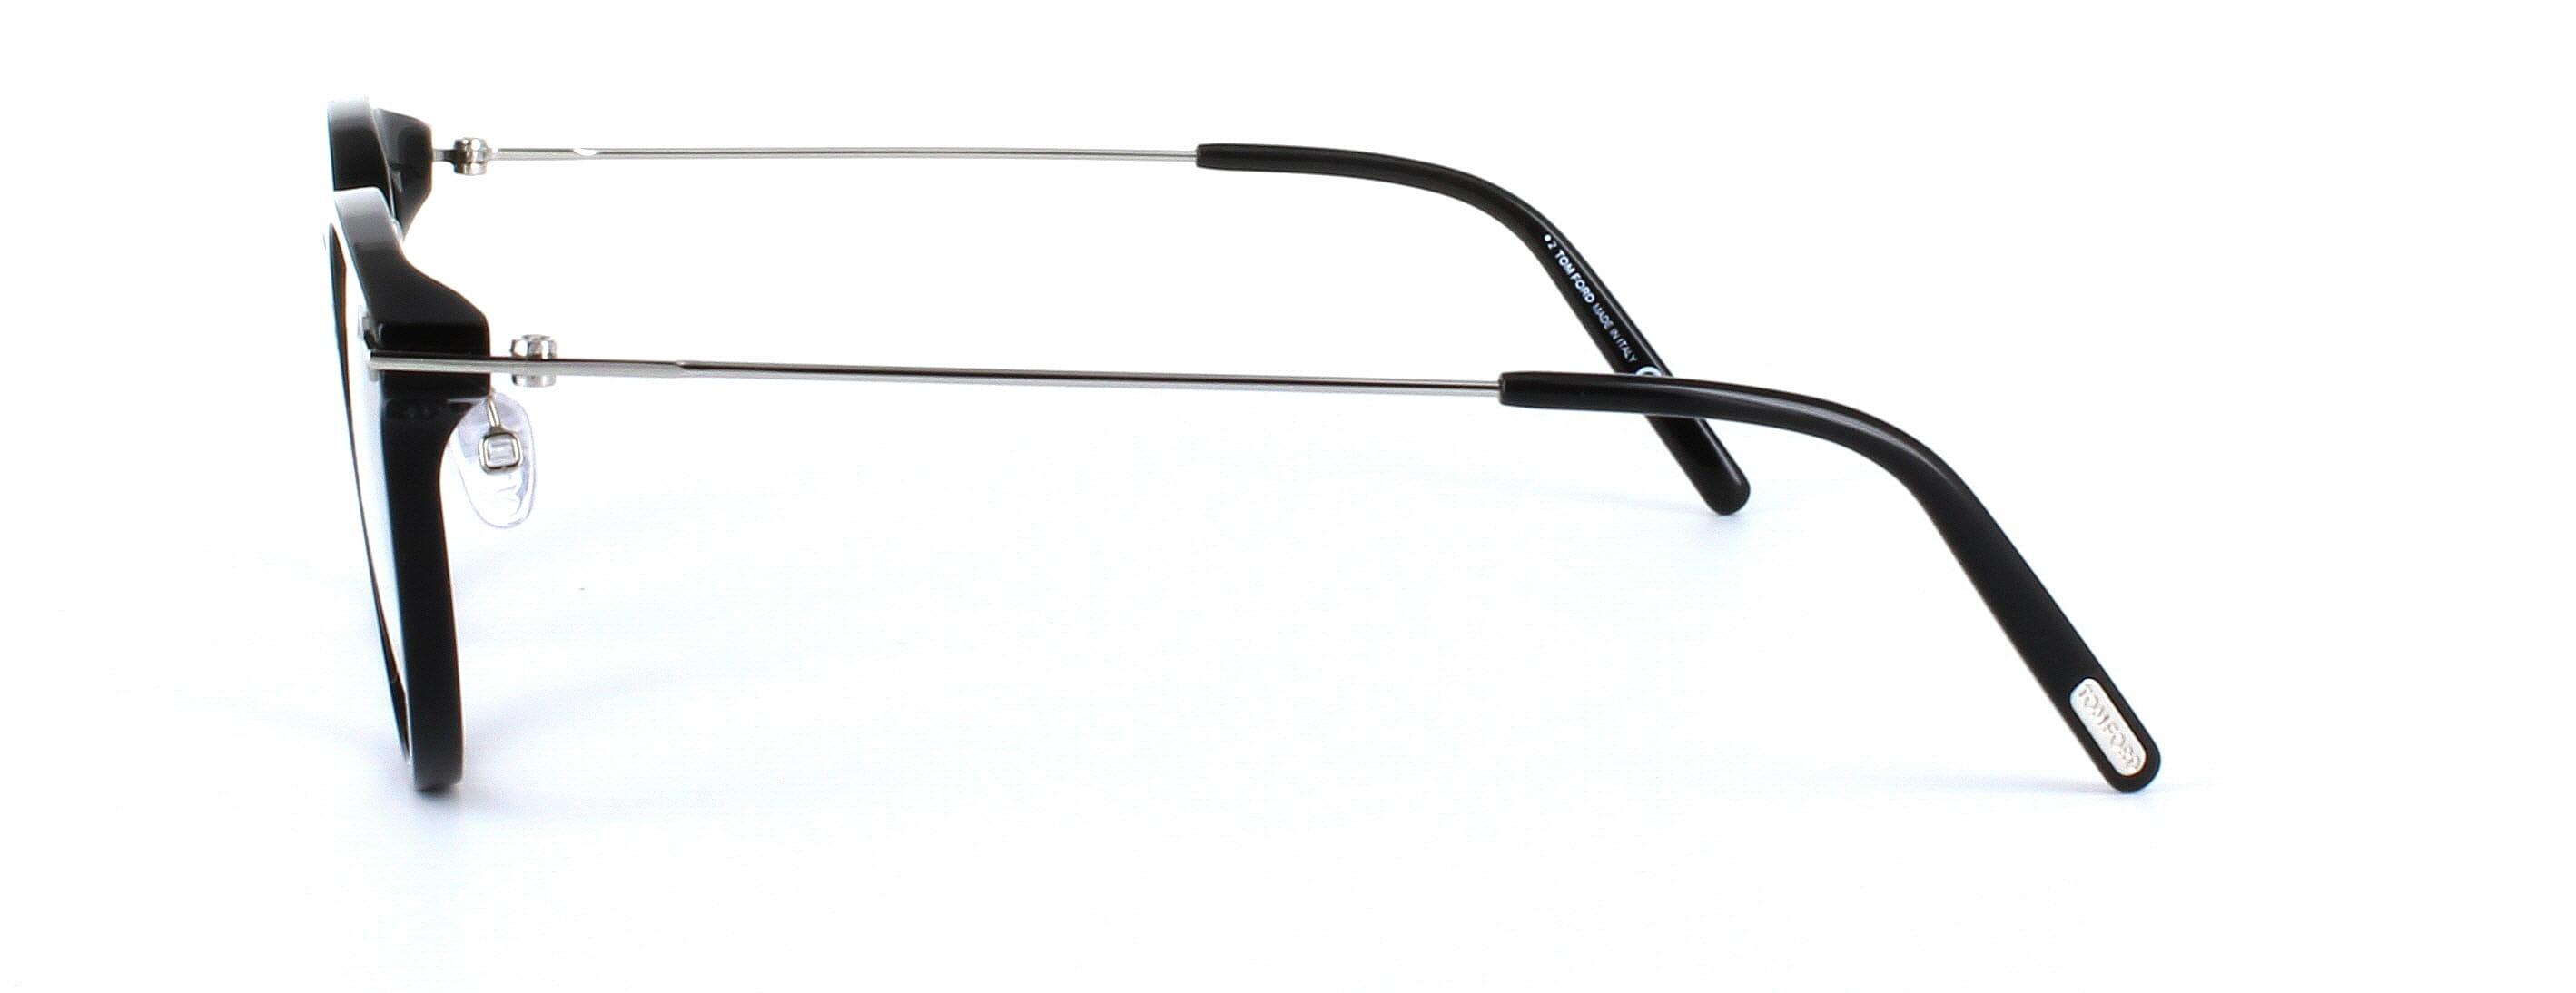 Tom Ford Glasses - FT5563 - Black - Image 2